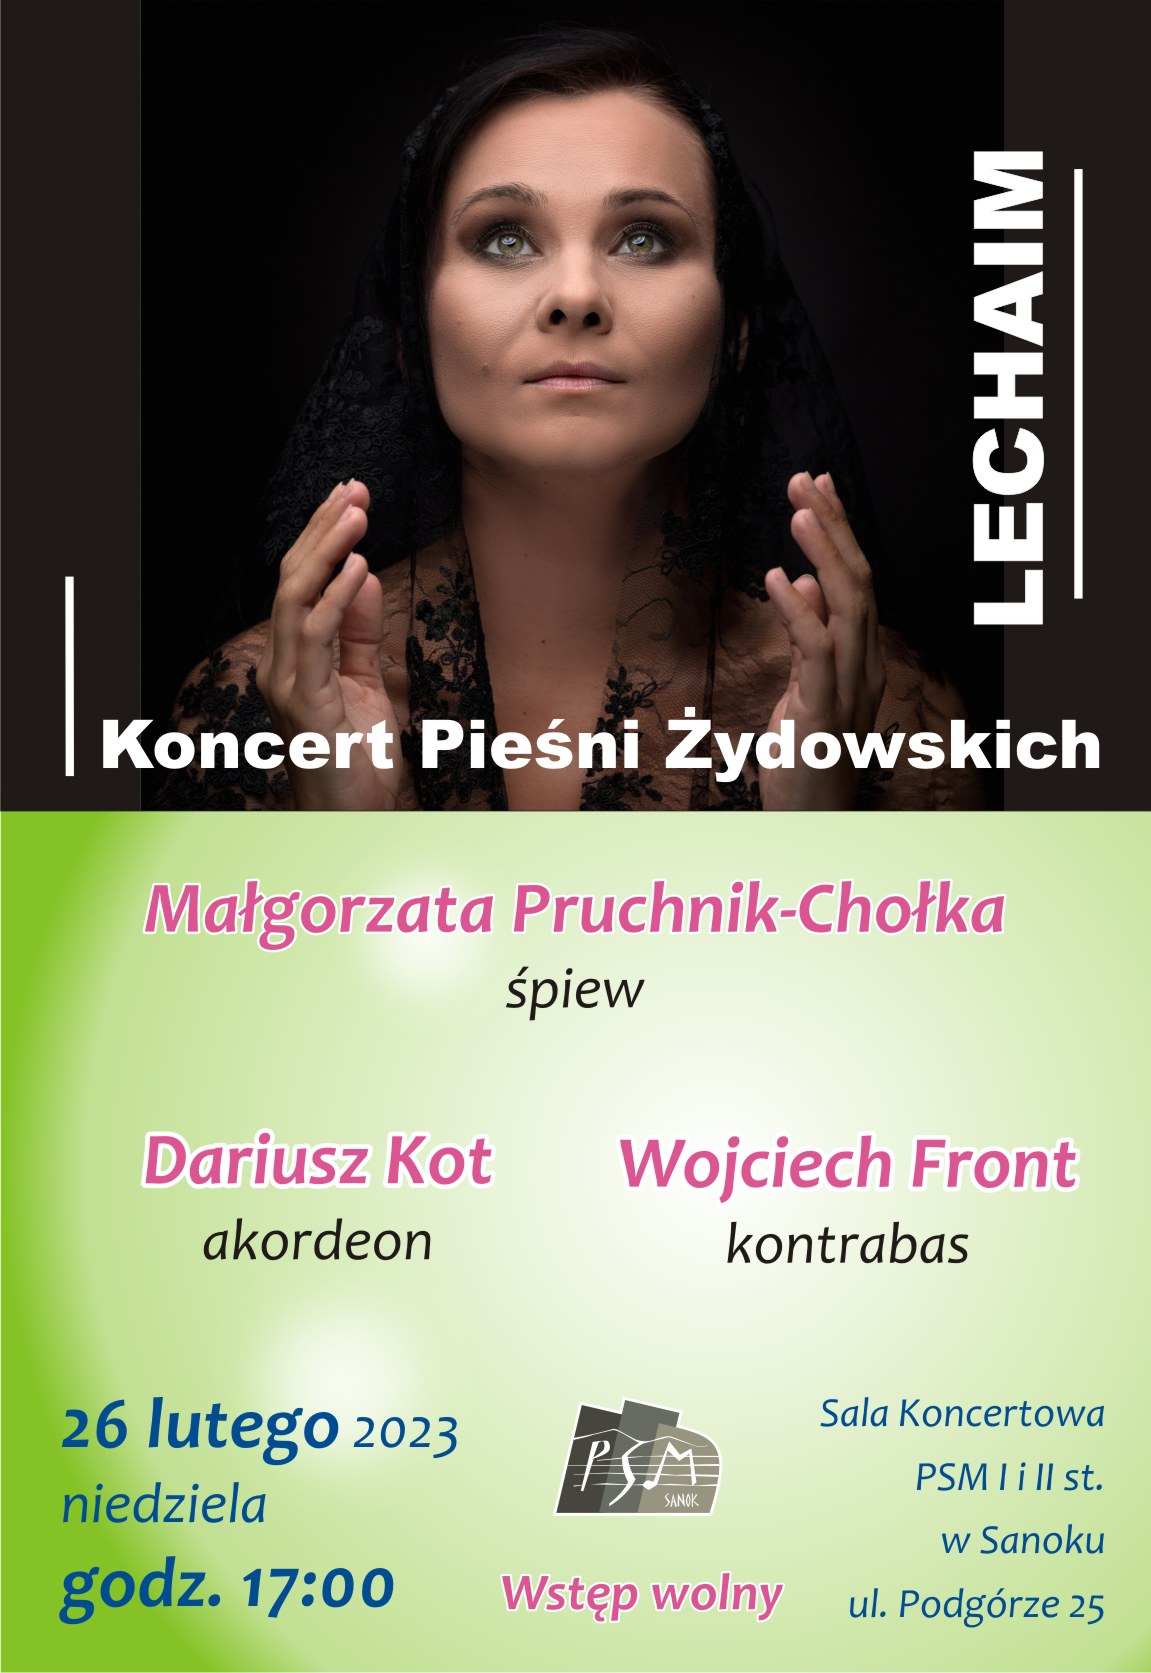 Plakat koncertu Lechaim - w tle zdjęcie Małgorzaty Pruchnik-Chołka, na zielonym tle skład zespołu, data i miejsce koncertu